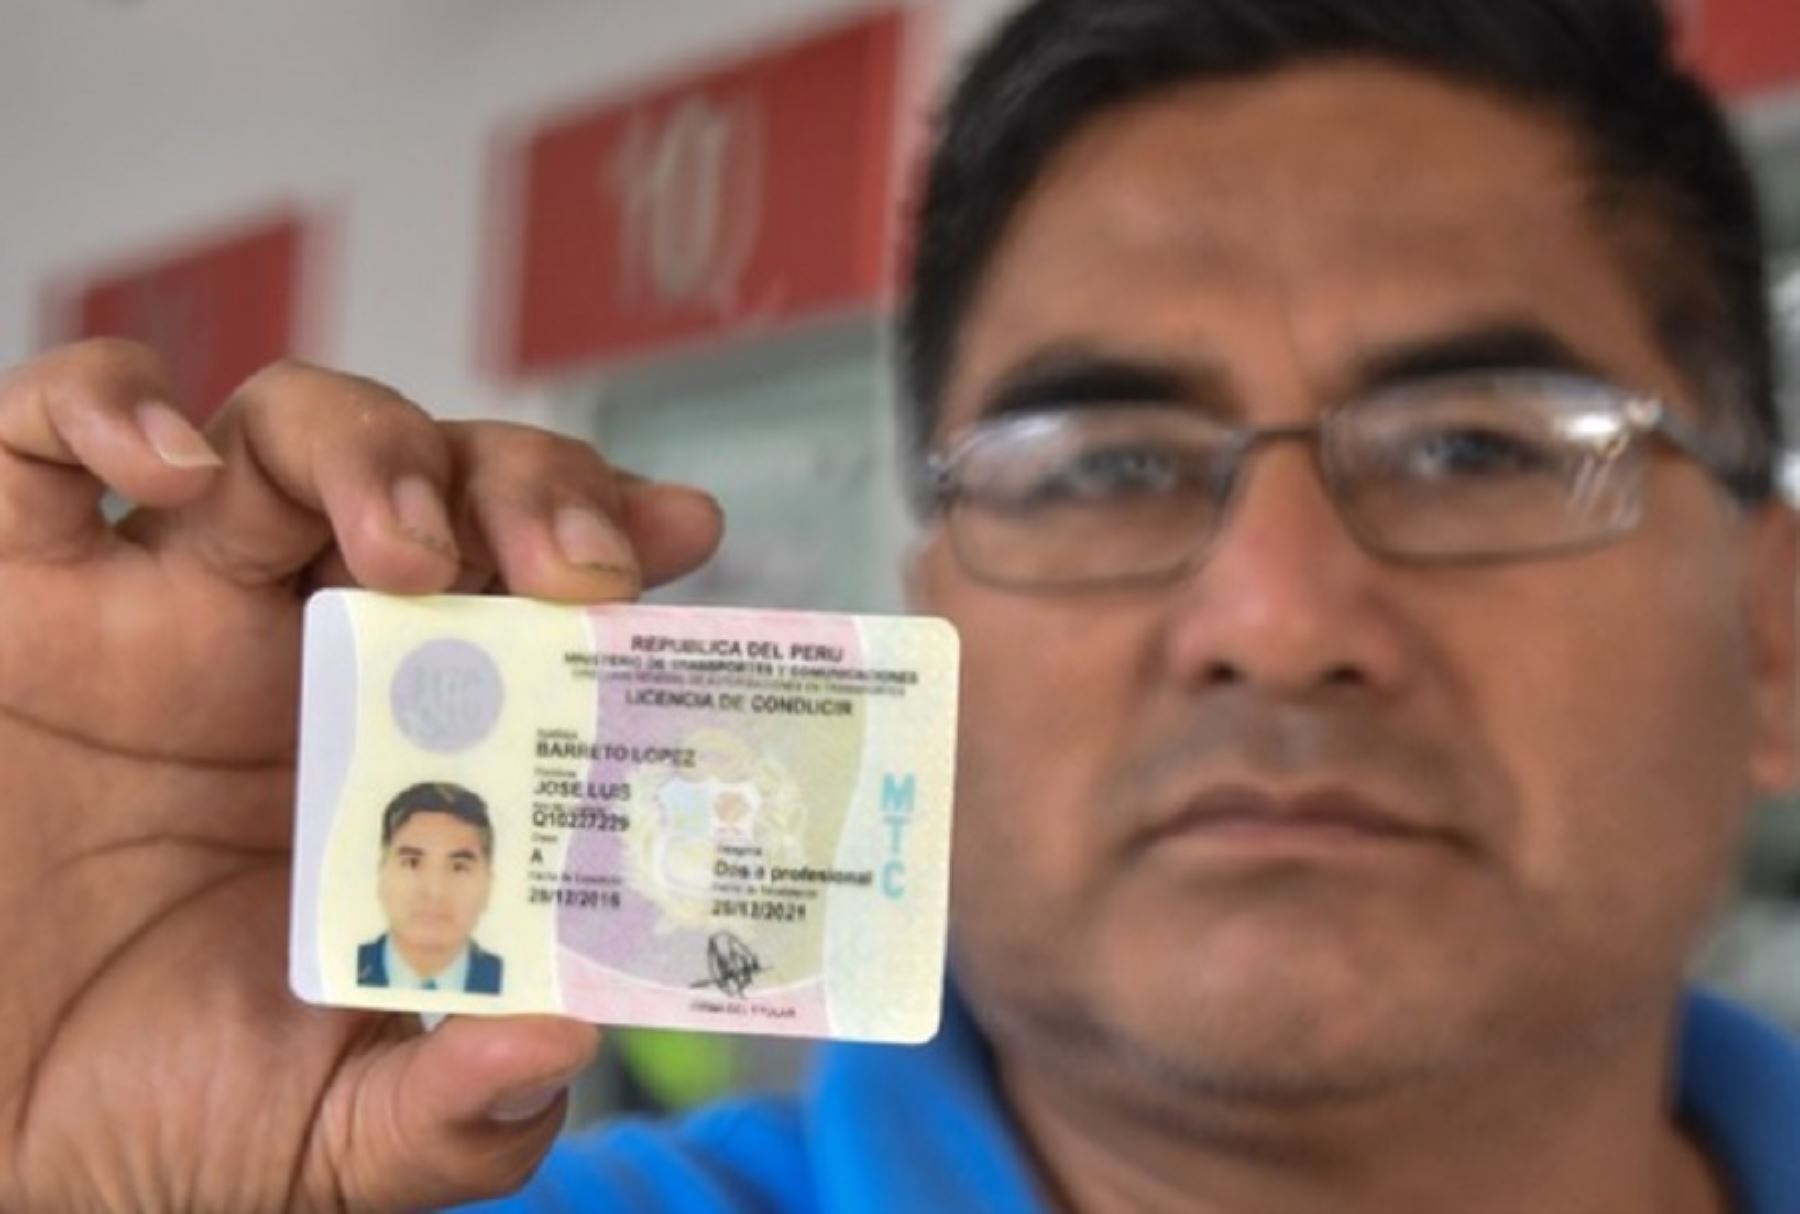 El Ministerio de Transportes y Comunicaciones entregará, este jueves 9 y viernes 10 de marzo, licencias de conducir electrónicas en Arequipa, como parte de su campaña denominada “Licenciatón”.